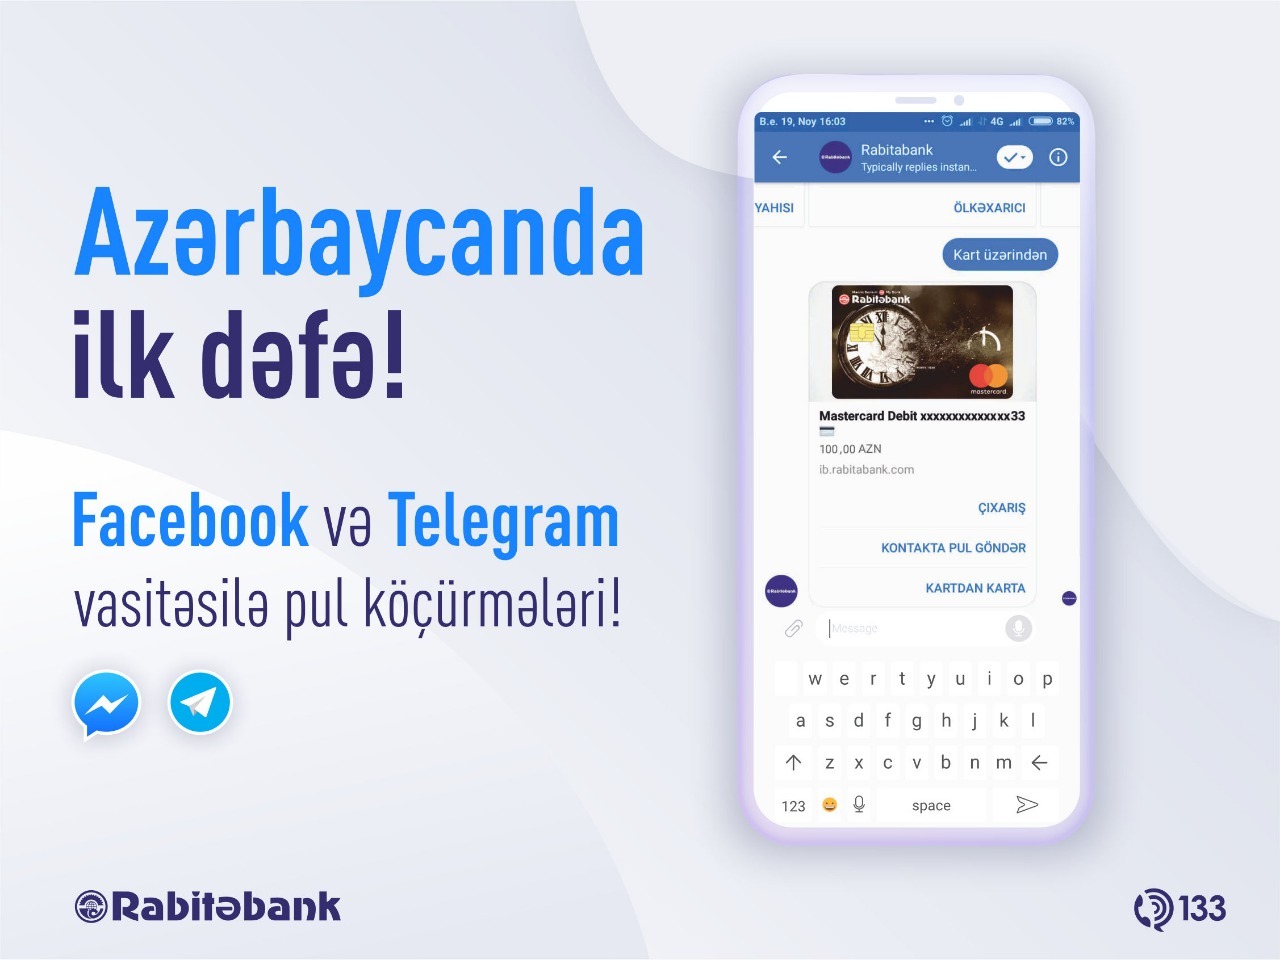 Telegram və Facebook vasitəsilə dostunuza pul göndərin!   - VİDEO